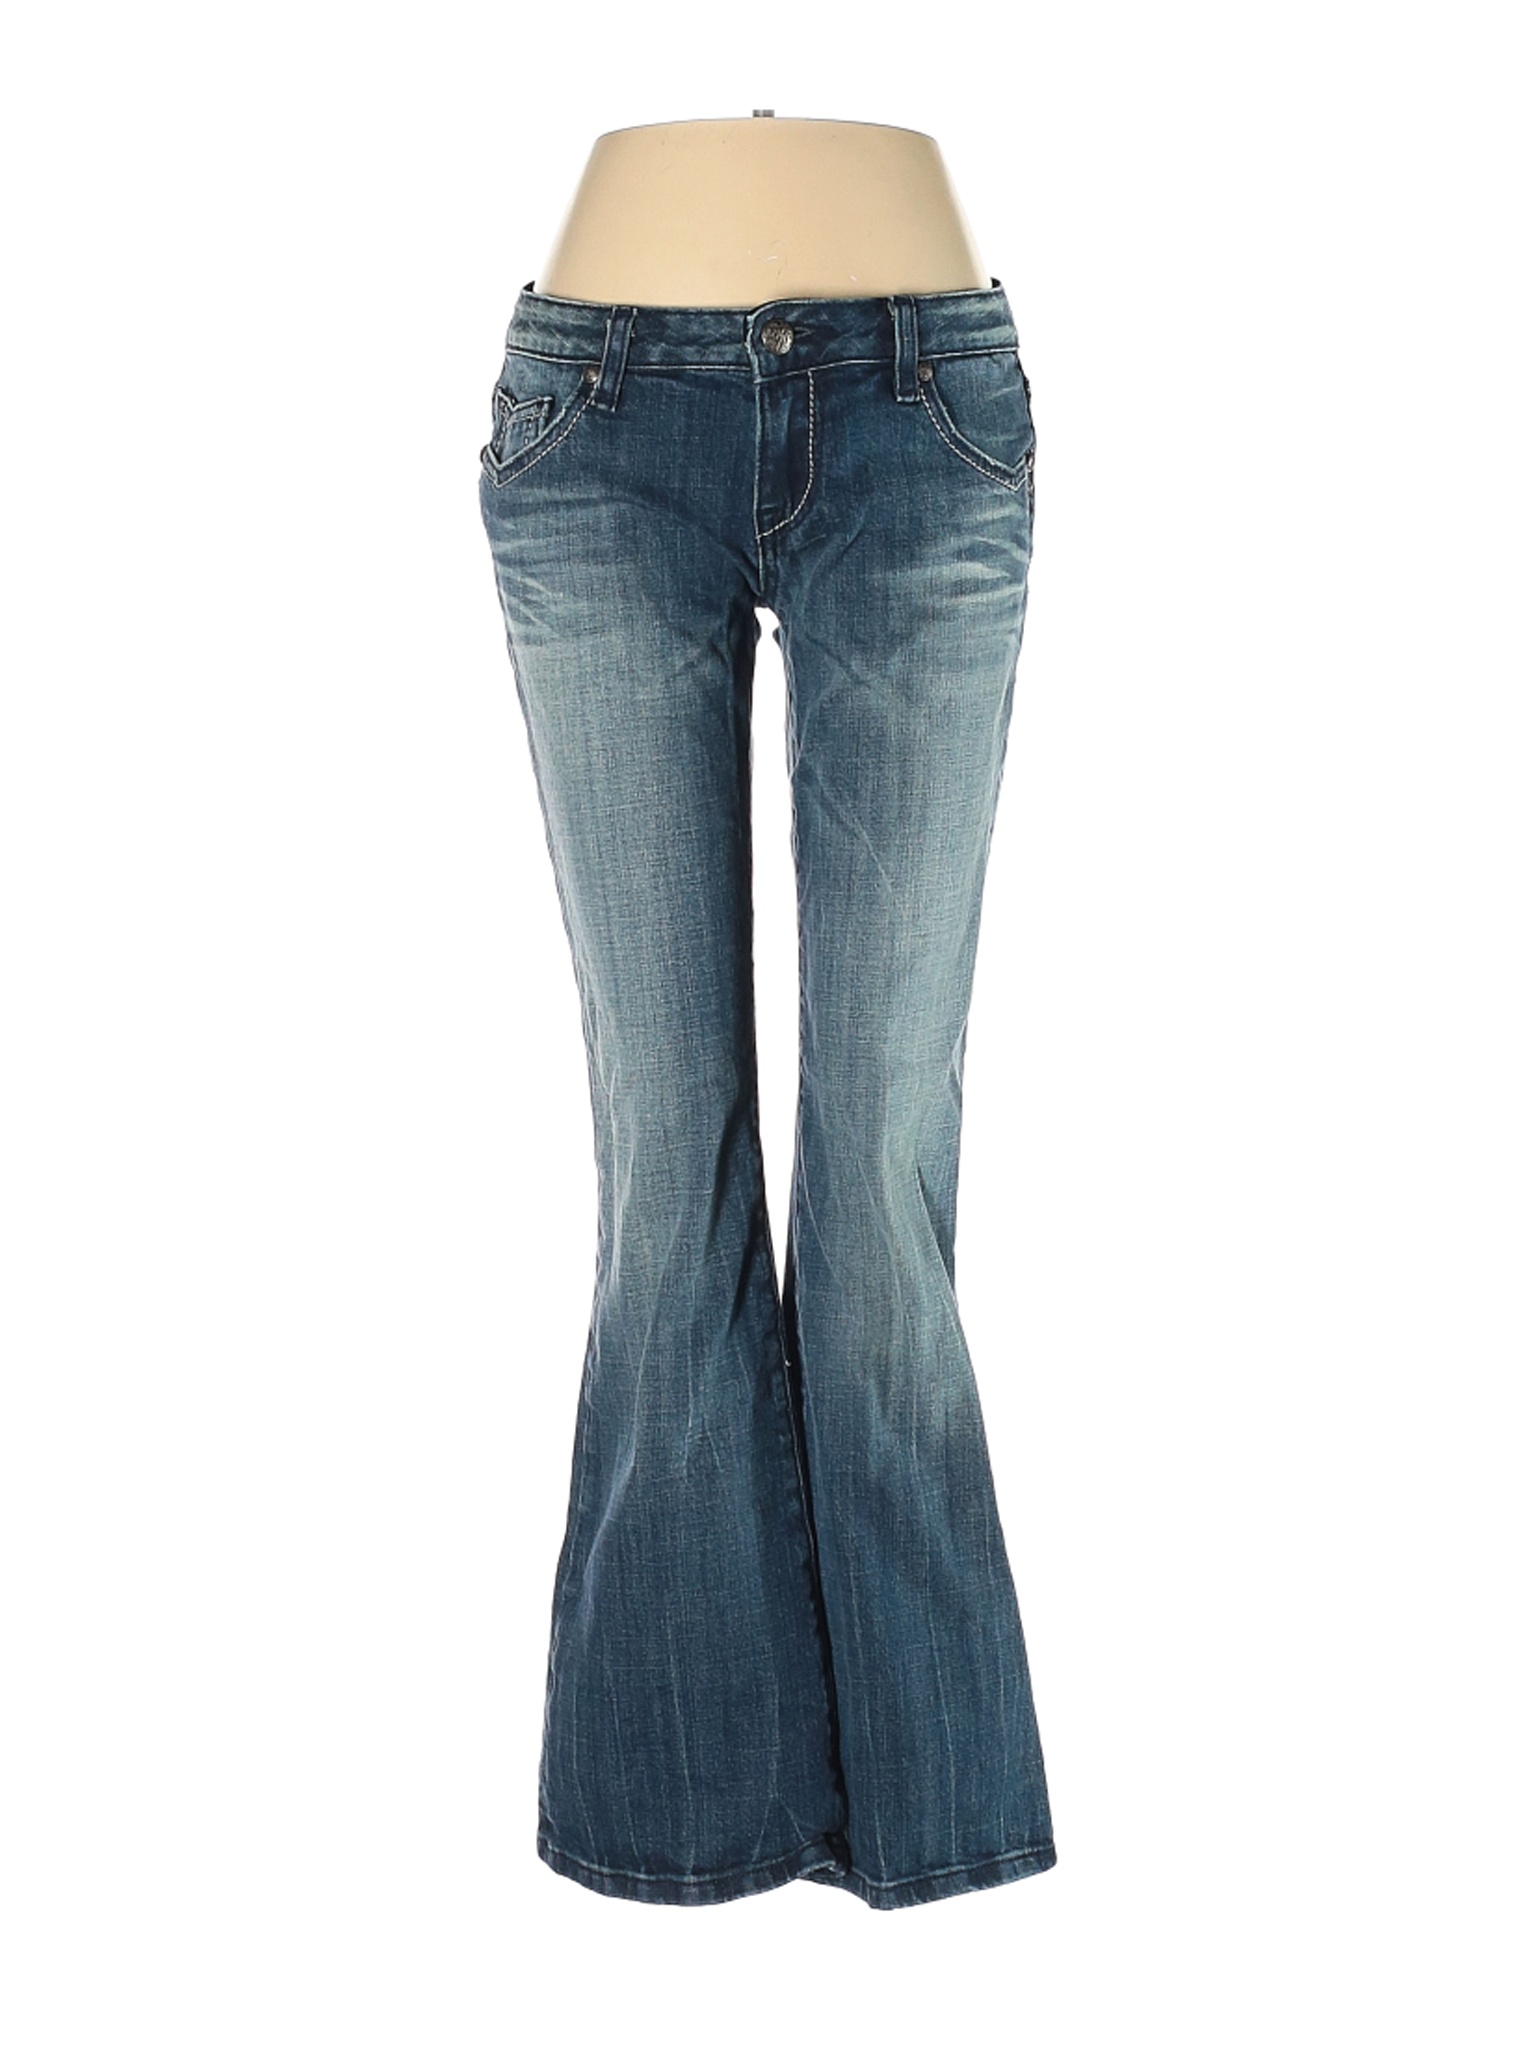 Rerock for Express Women Blue Jeans 4 | eBay